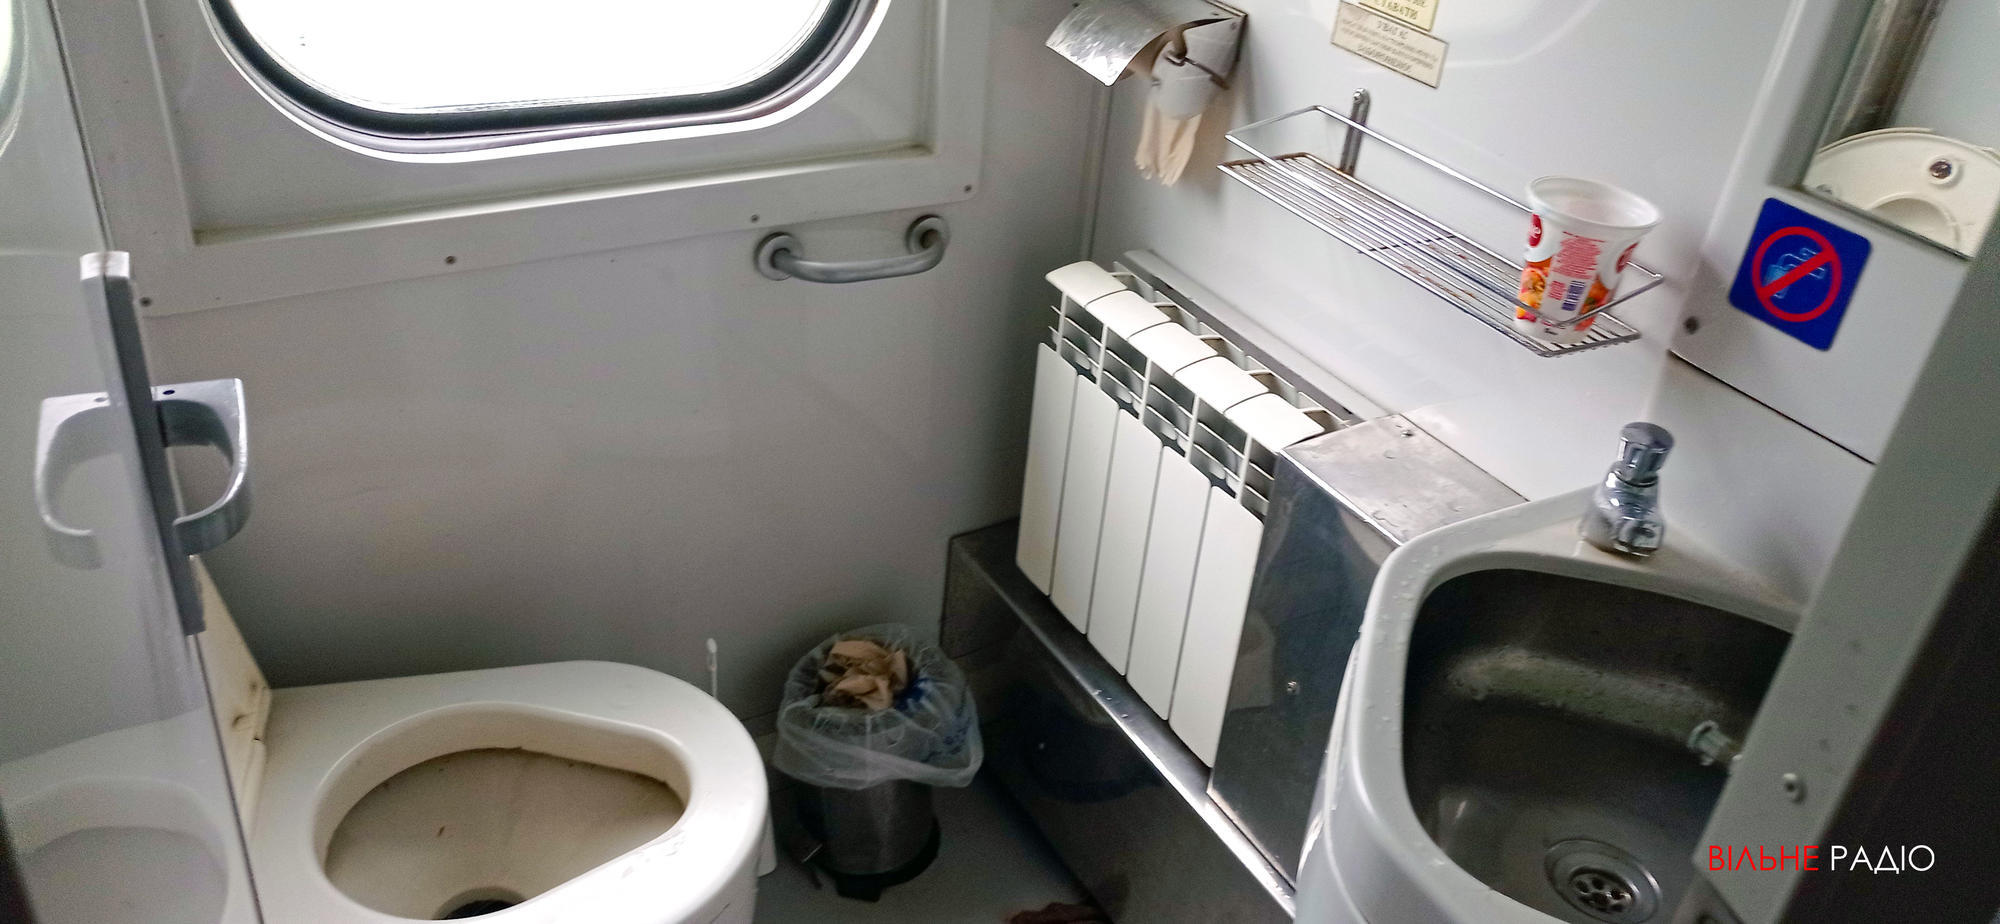 вакуумный туалет в обновленном вагоне Укрзализныци